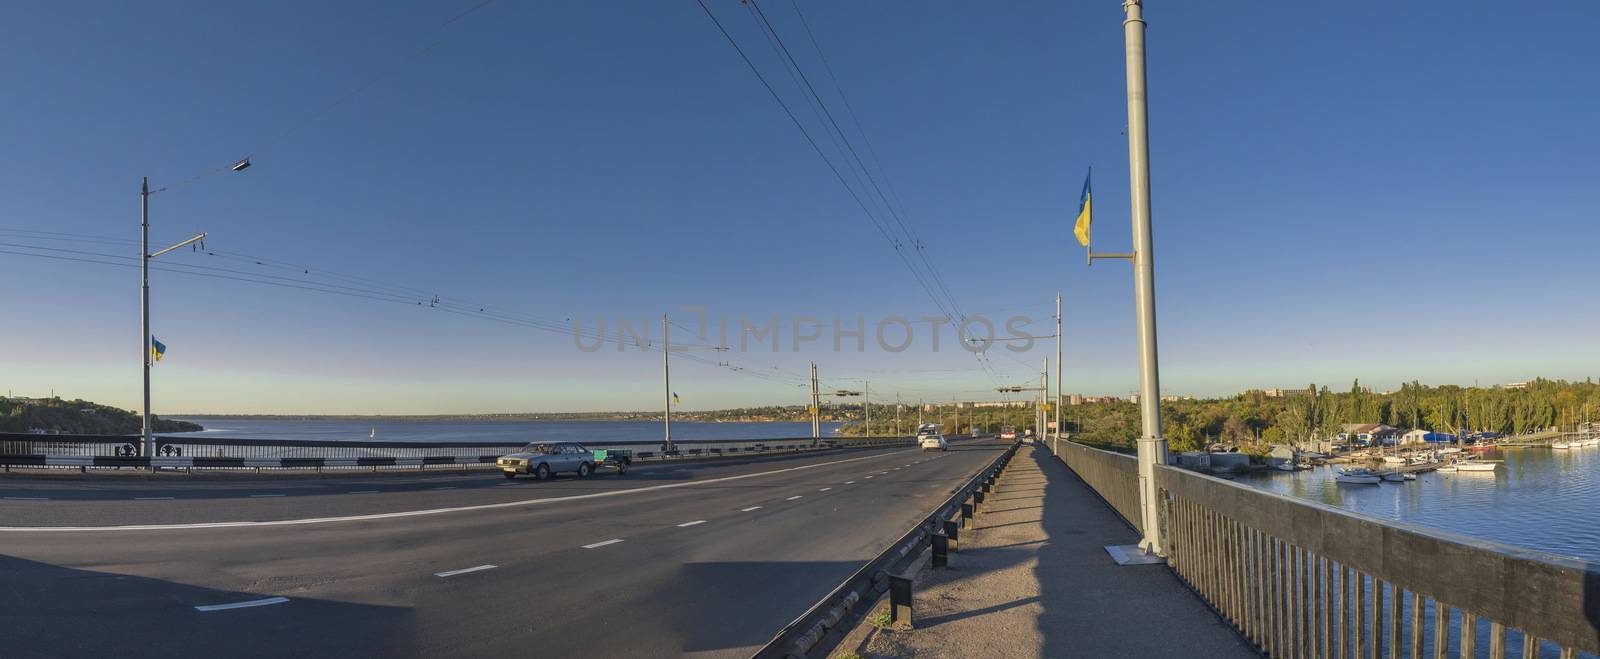 Ingulsky Bridge in Nikolaev, Ukraine by Multipedia